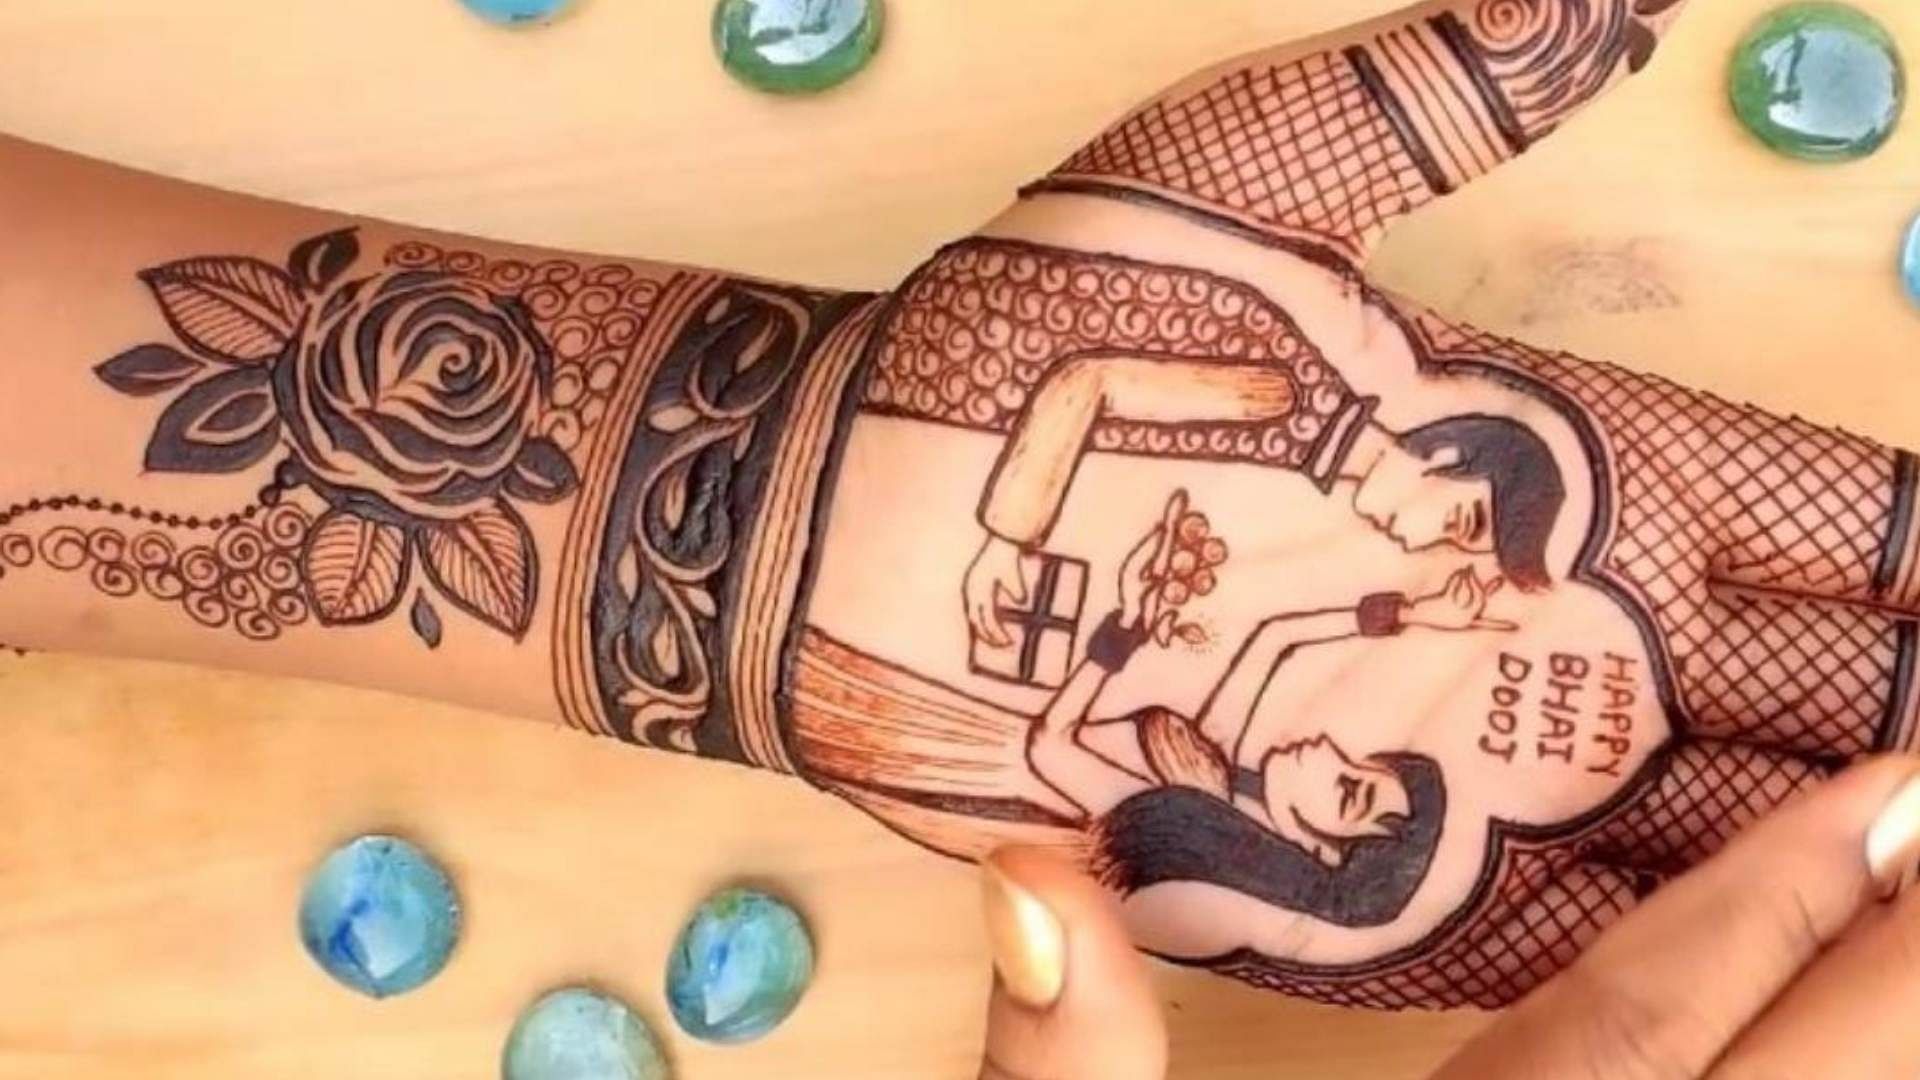 Ganga Tattoos in Kalkaji,Delhi - Best Tattoo Artists in Delhi - Justdial